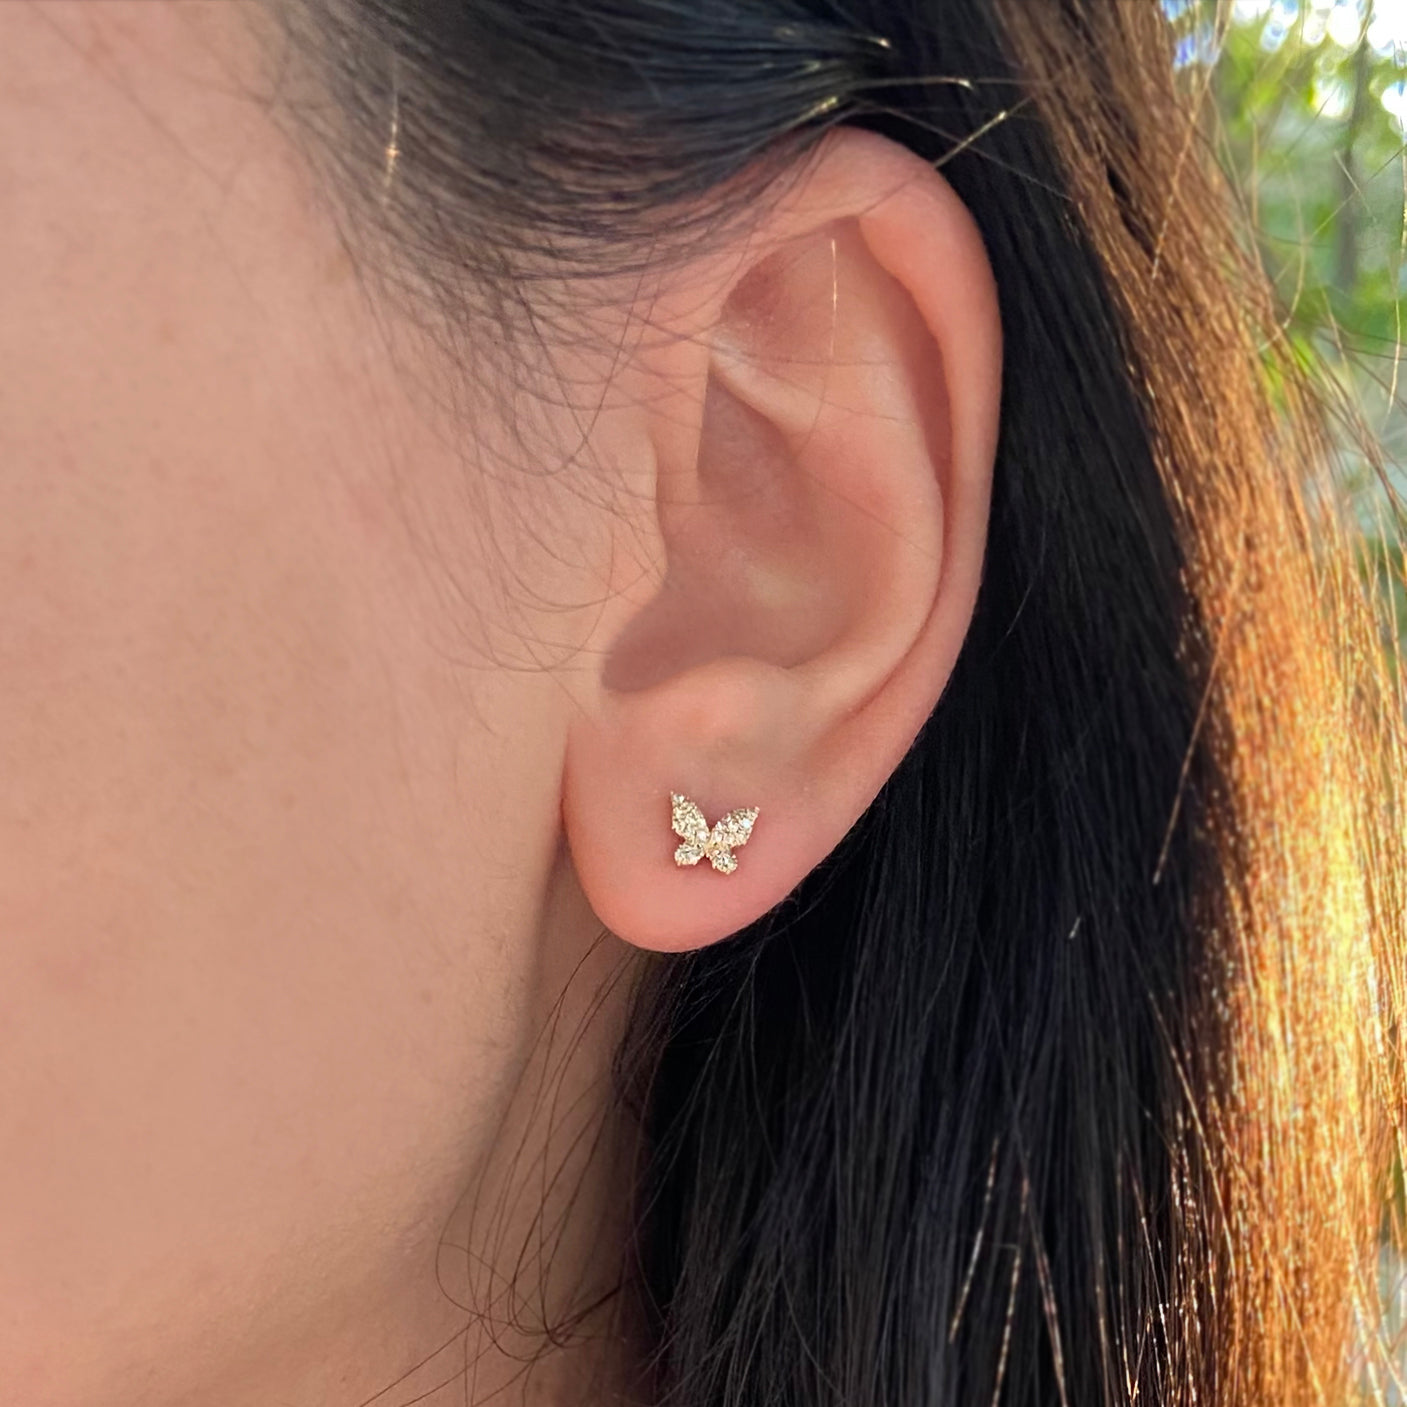 butterfly stud earrings with diamonds